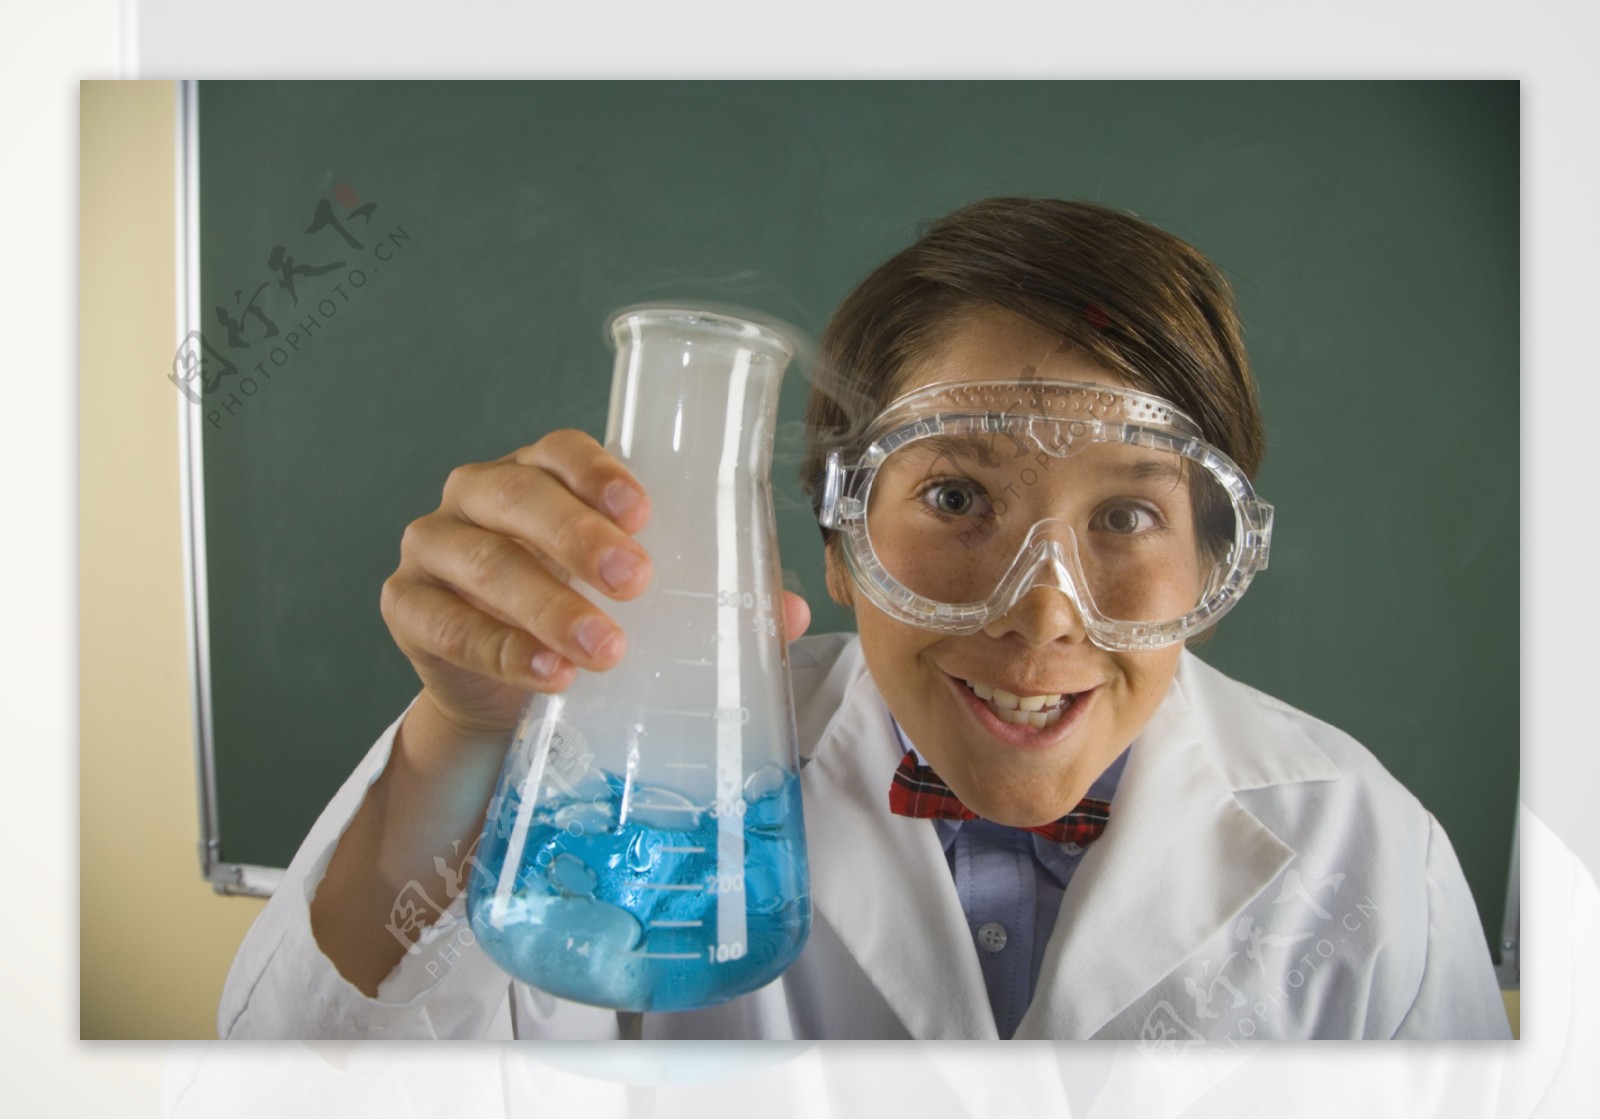 做化学实验的男生图片